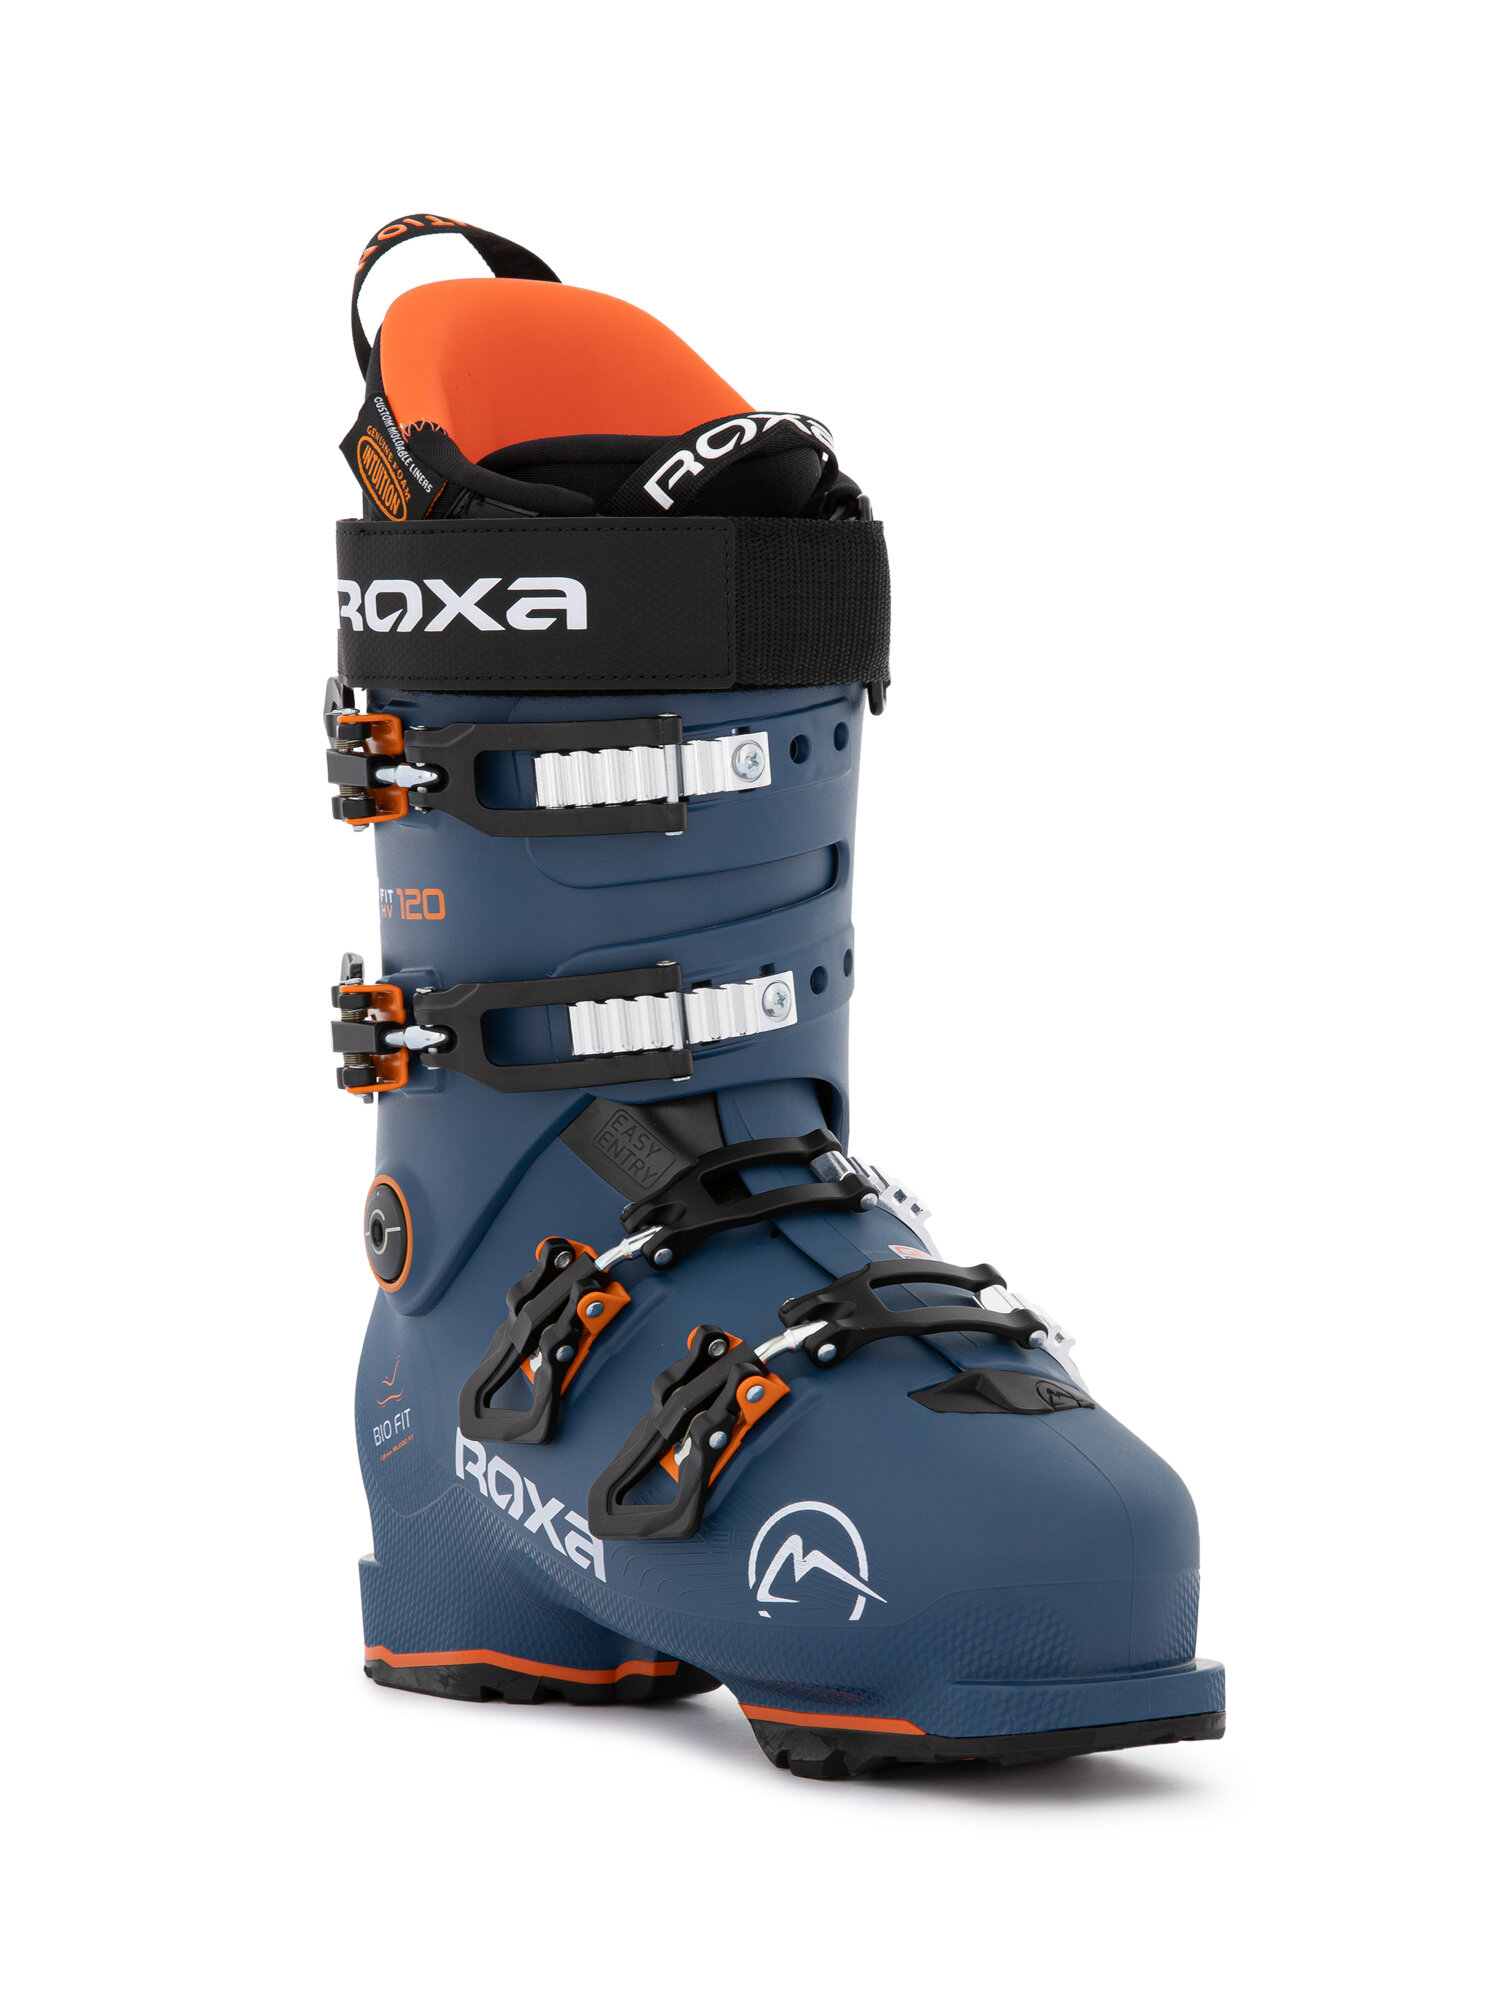 Горнолыжные ботинки ROXA Rfit 120 I.R. Gw Dark Blue/Orange (см:24,5)